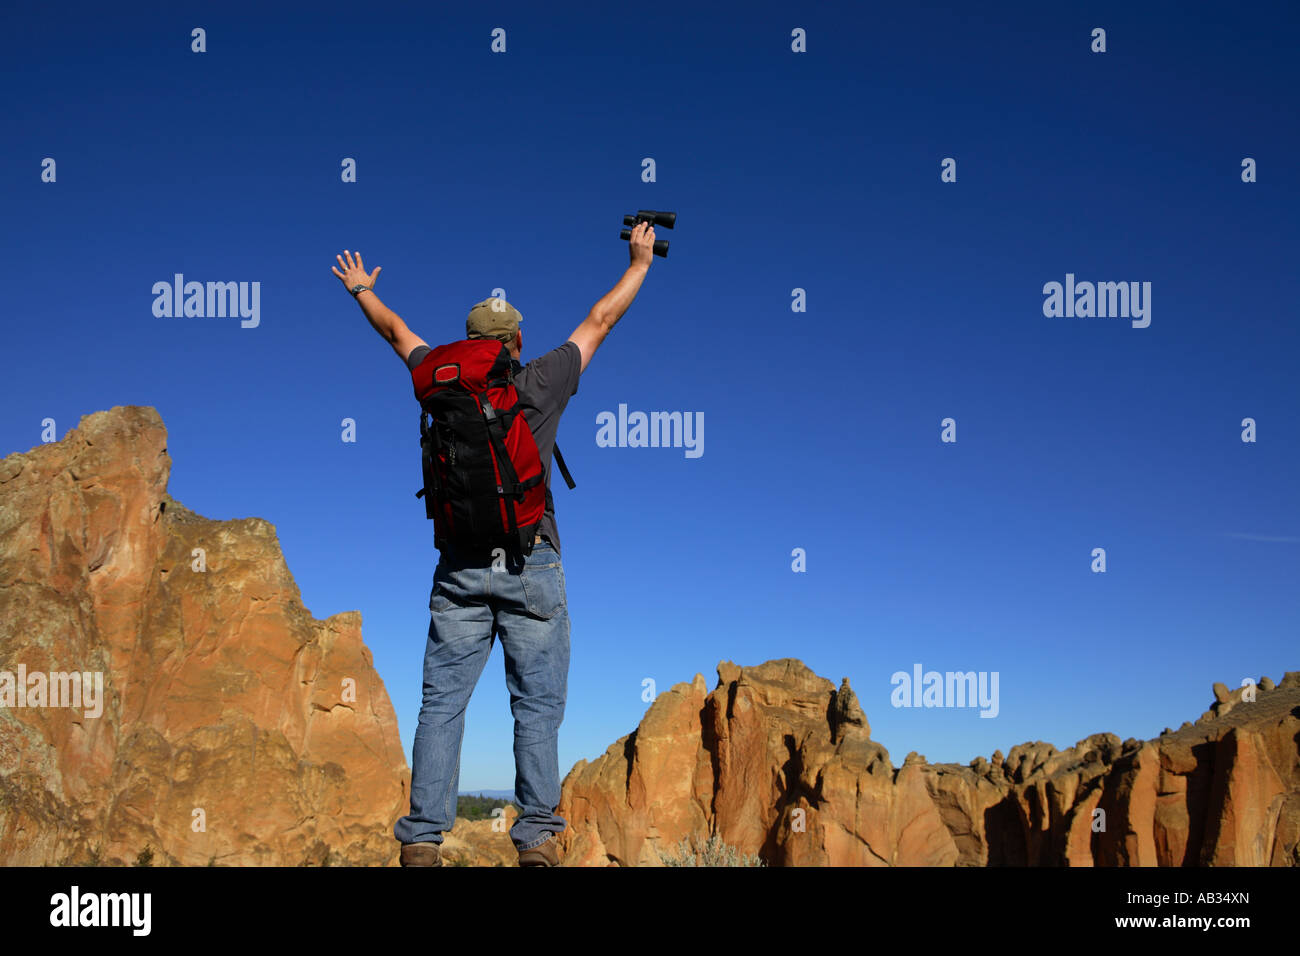 Homme portant un sac à dos se tient avec les mains dans l'air dans un paysage rocheux Banque D'Images